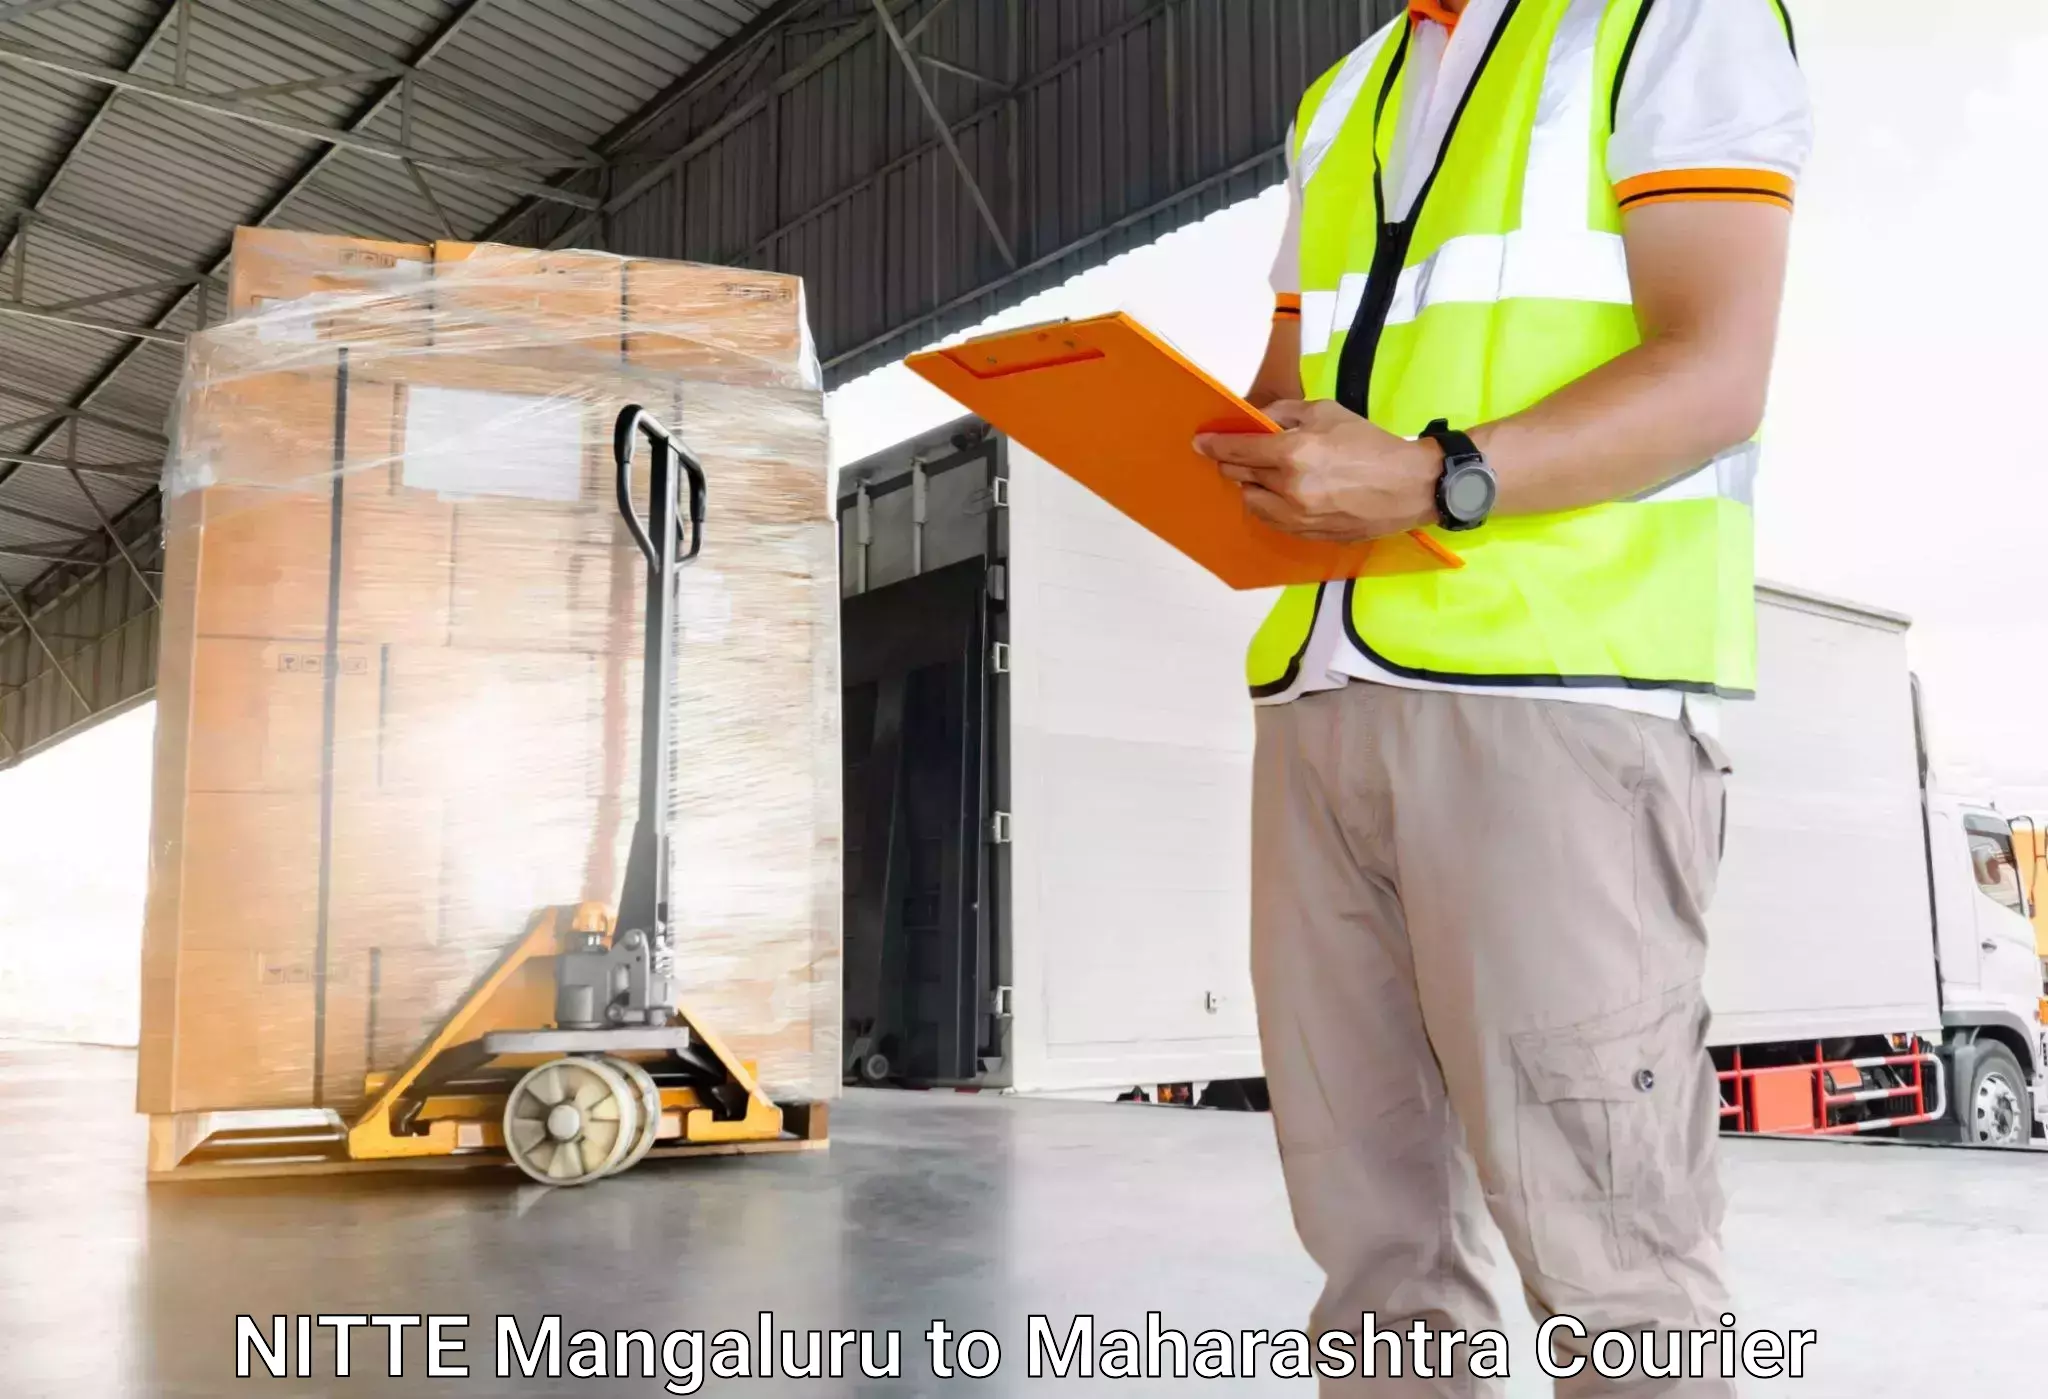 Luggage transport service NITTE Mangaluru to Ramtek